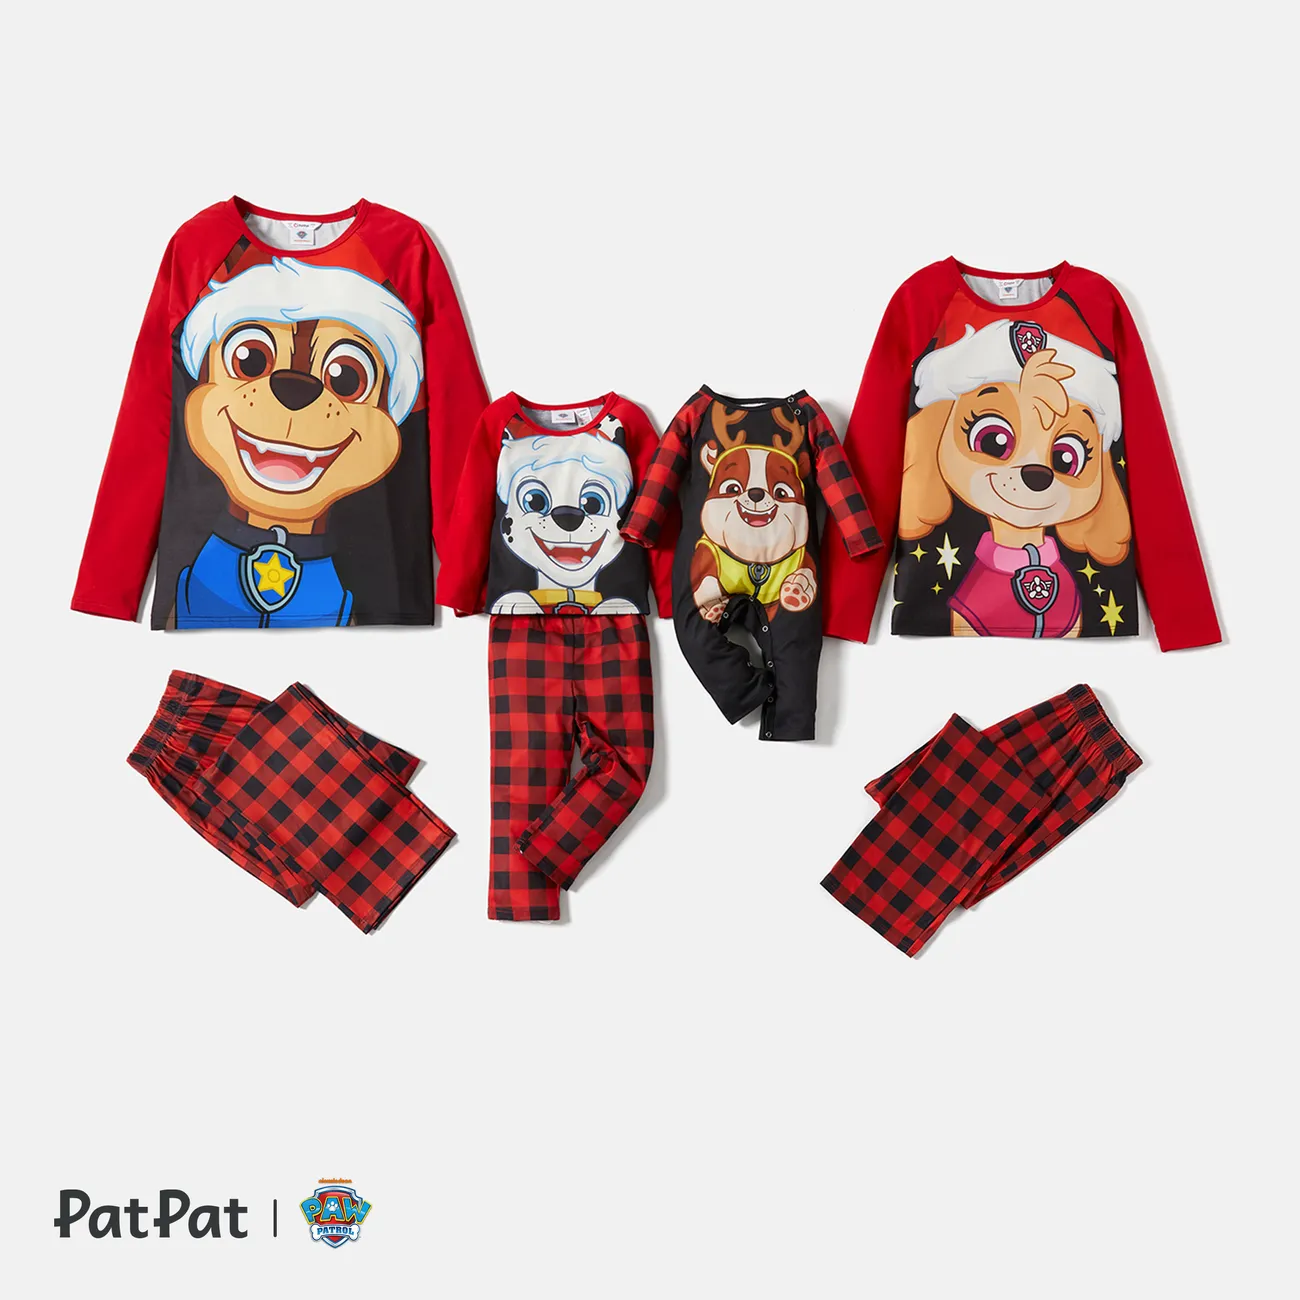 PAW Patrol Christmas Big Graphic Top and Plaid Pants Pajamas Sets(Flame Resistant) Red big image 1